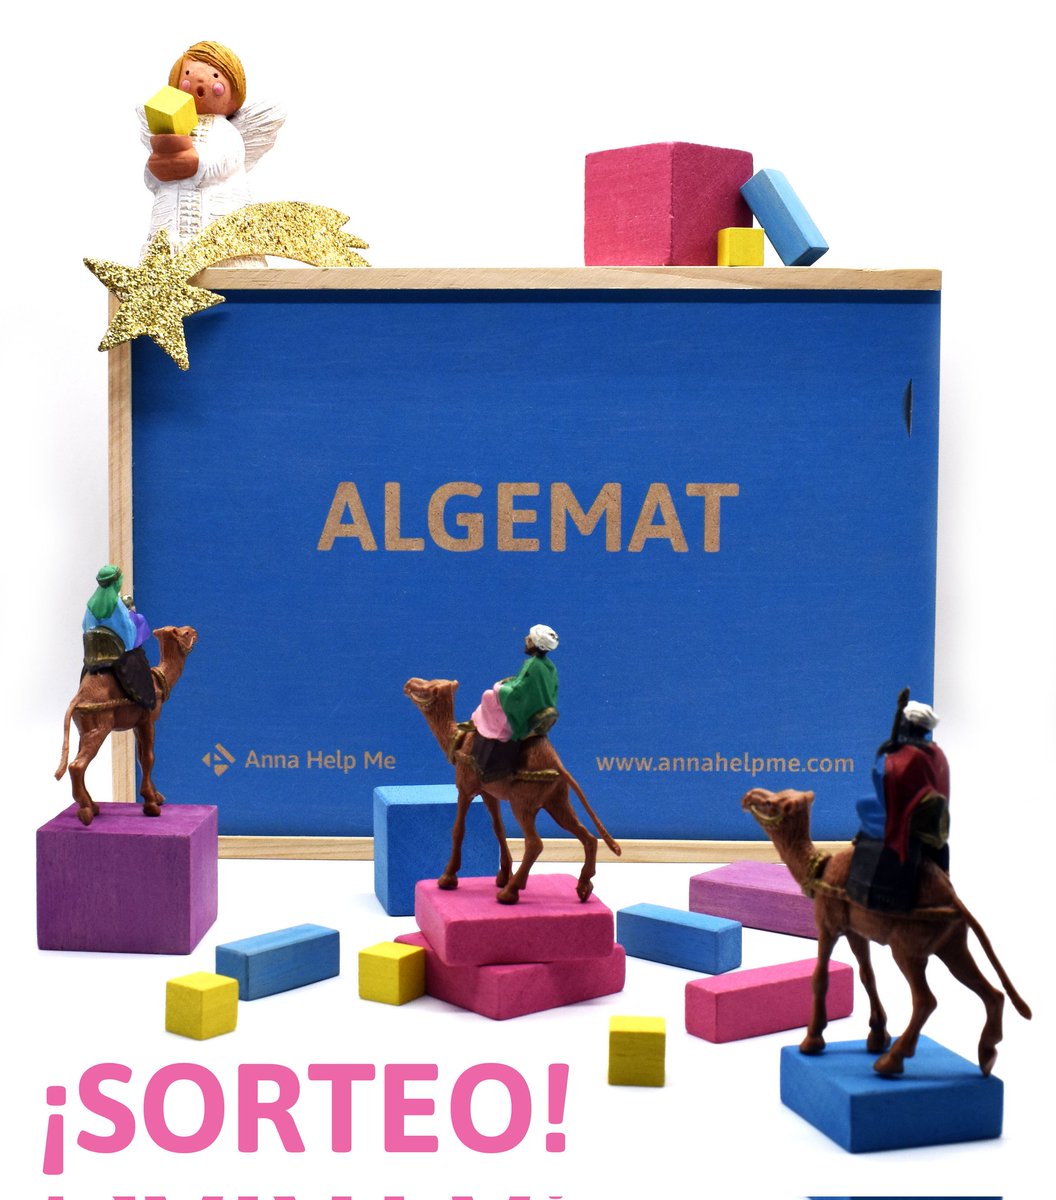 ¡Sorteamos un Algemat para que el 2024 podamos enseñar álgebra con material manipulativo! ¿Cómo participar? 1️⃣ Seguirnos 2️⃣ Dar retweet ¿Aún no sabes qué es el Algemat? Entra en nuestra página web y conoce nuestro proyecto para trabajar las matemáticas.